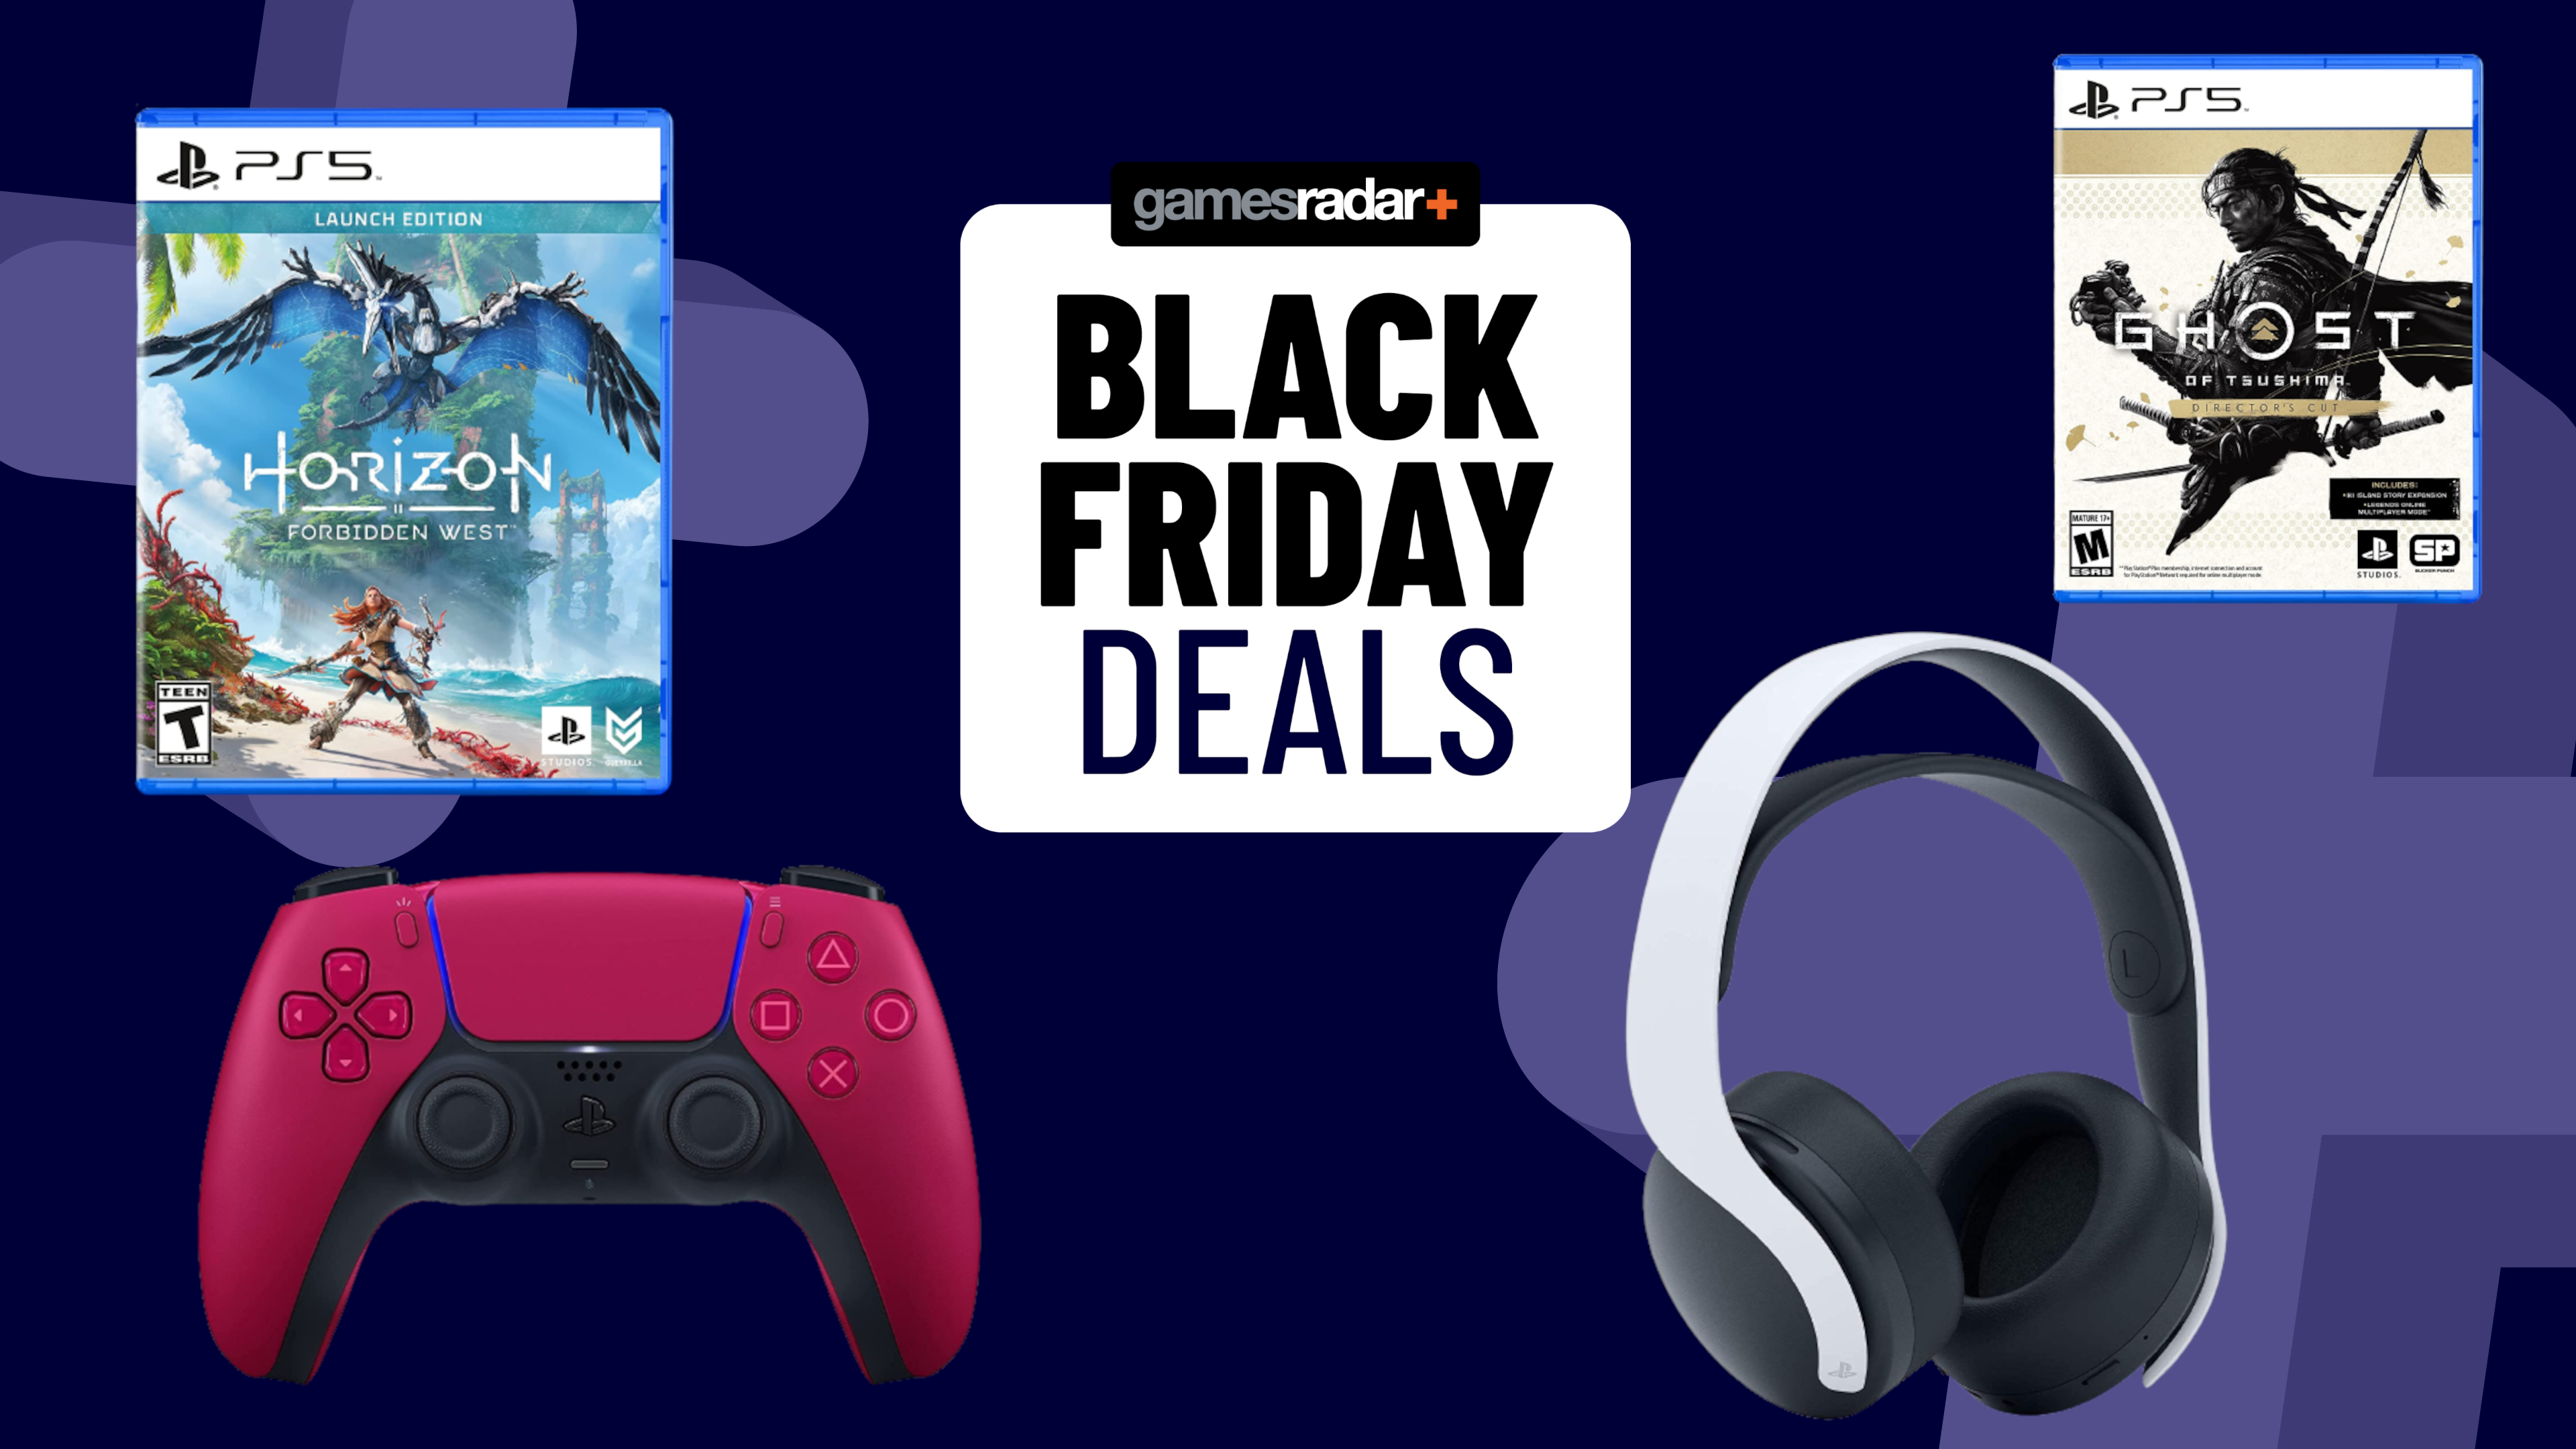 Black Friday PS5 deals